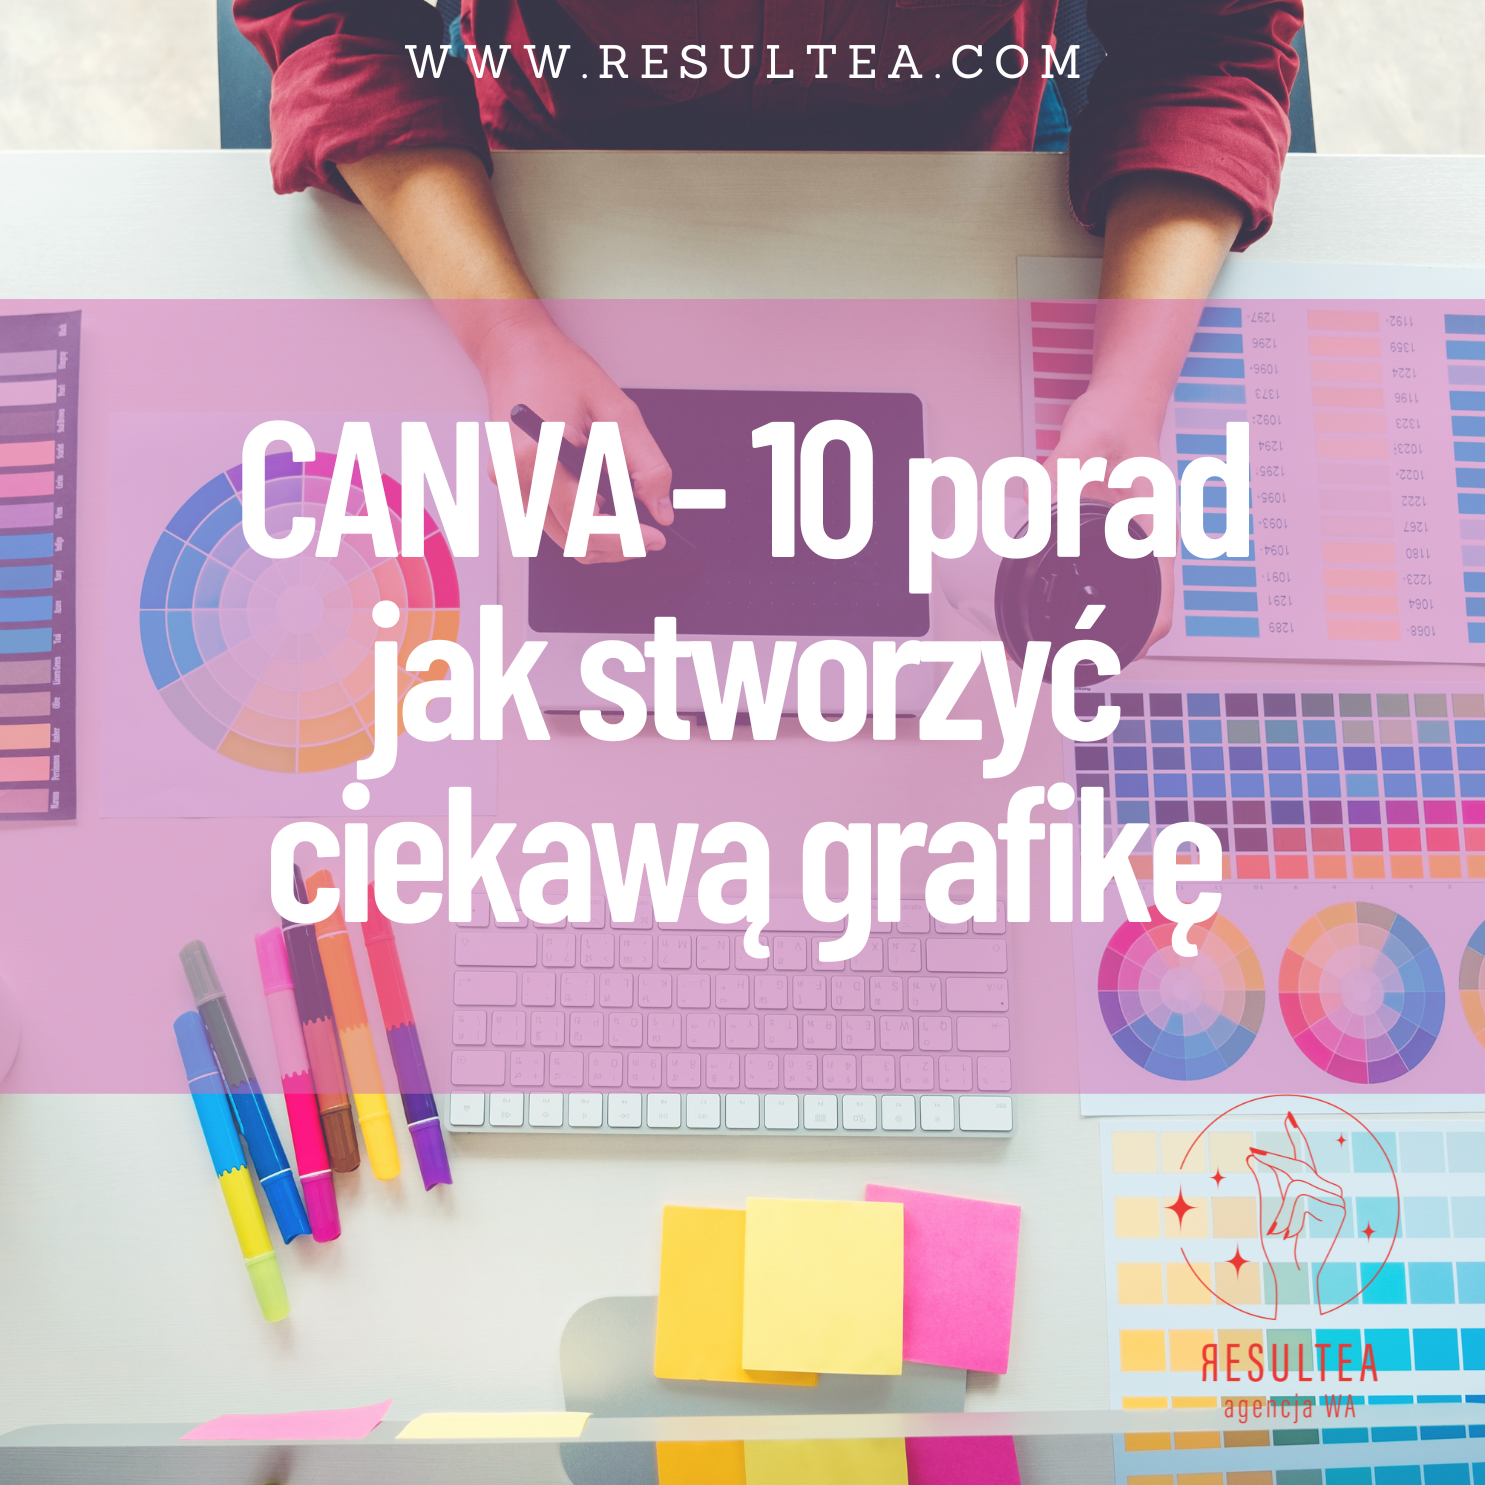 canva - 10 porad jak stworzyć ciekawą grafikę